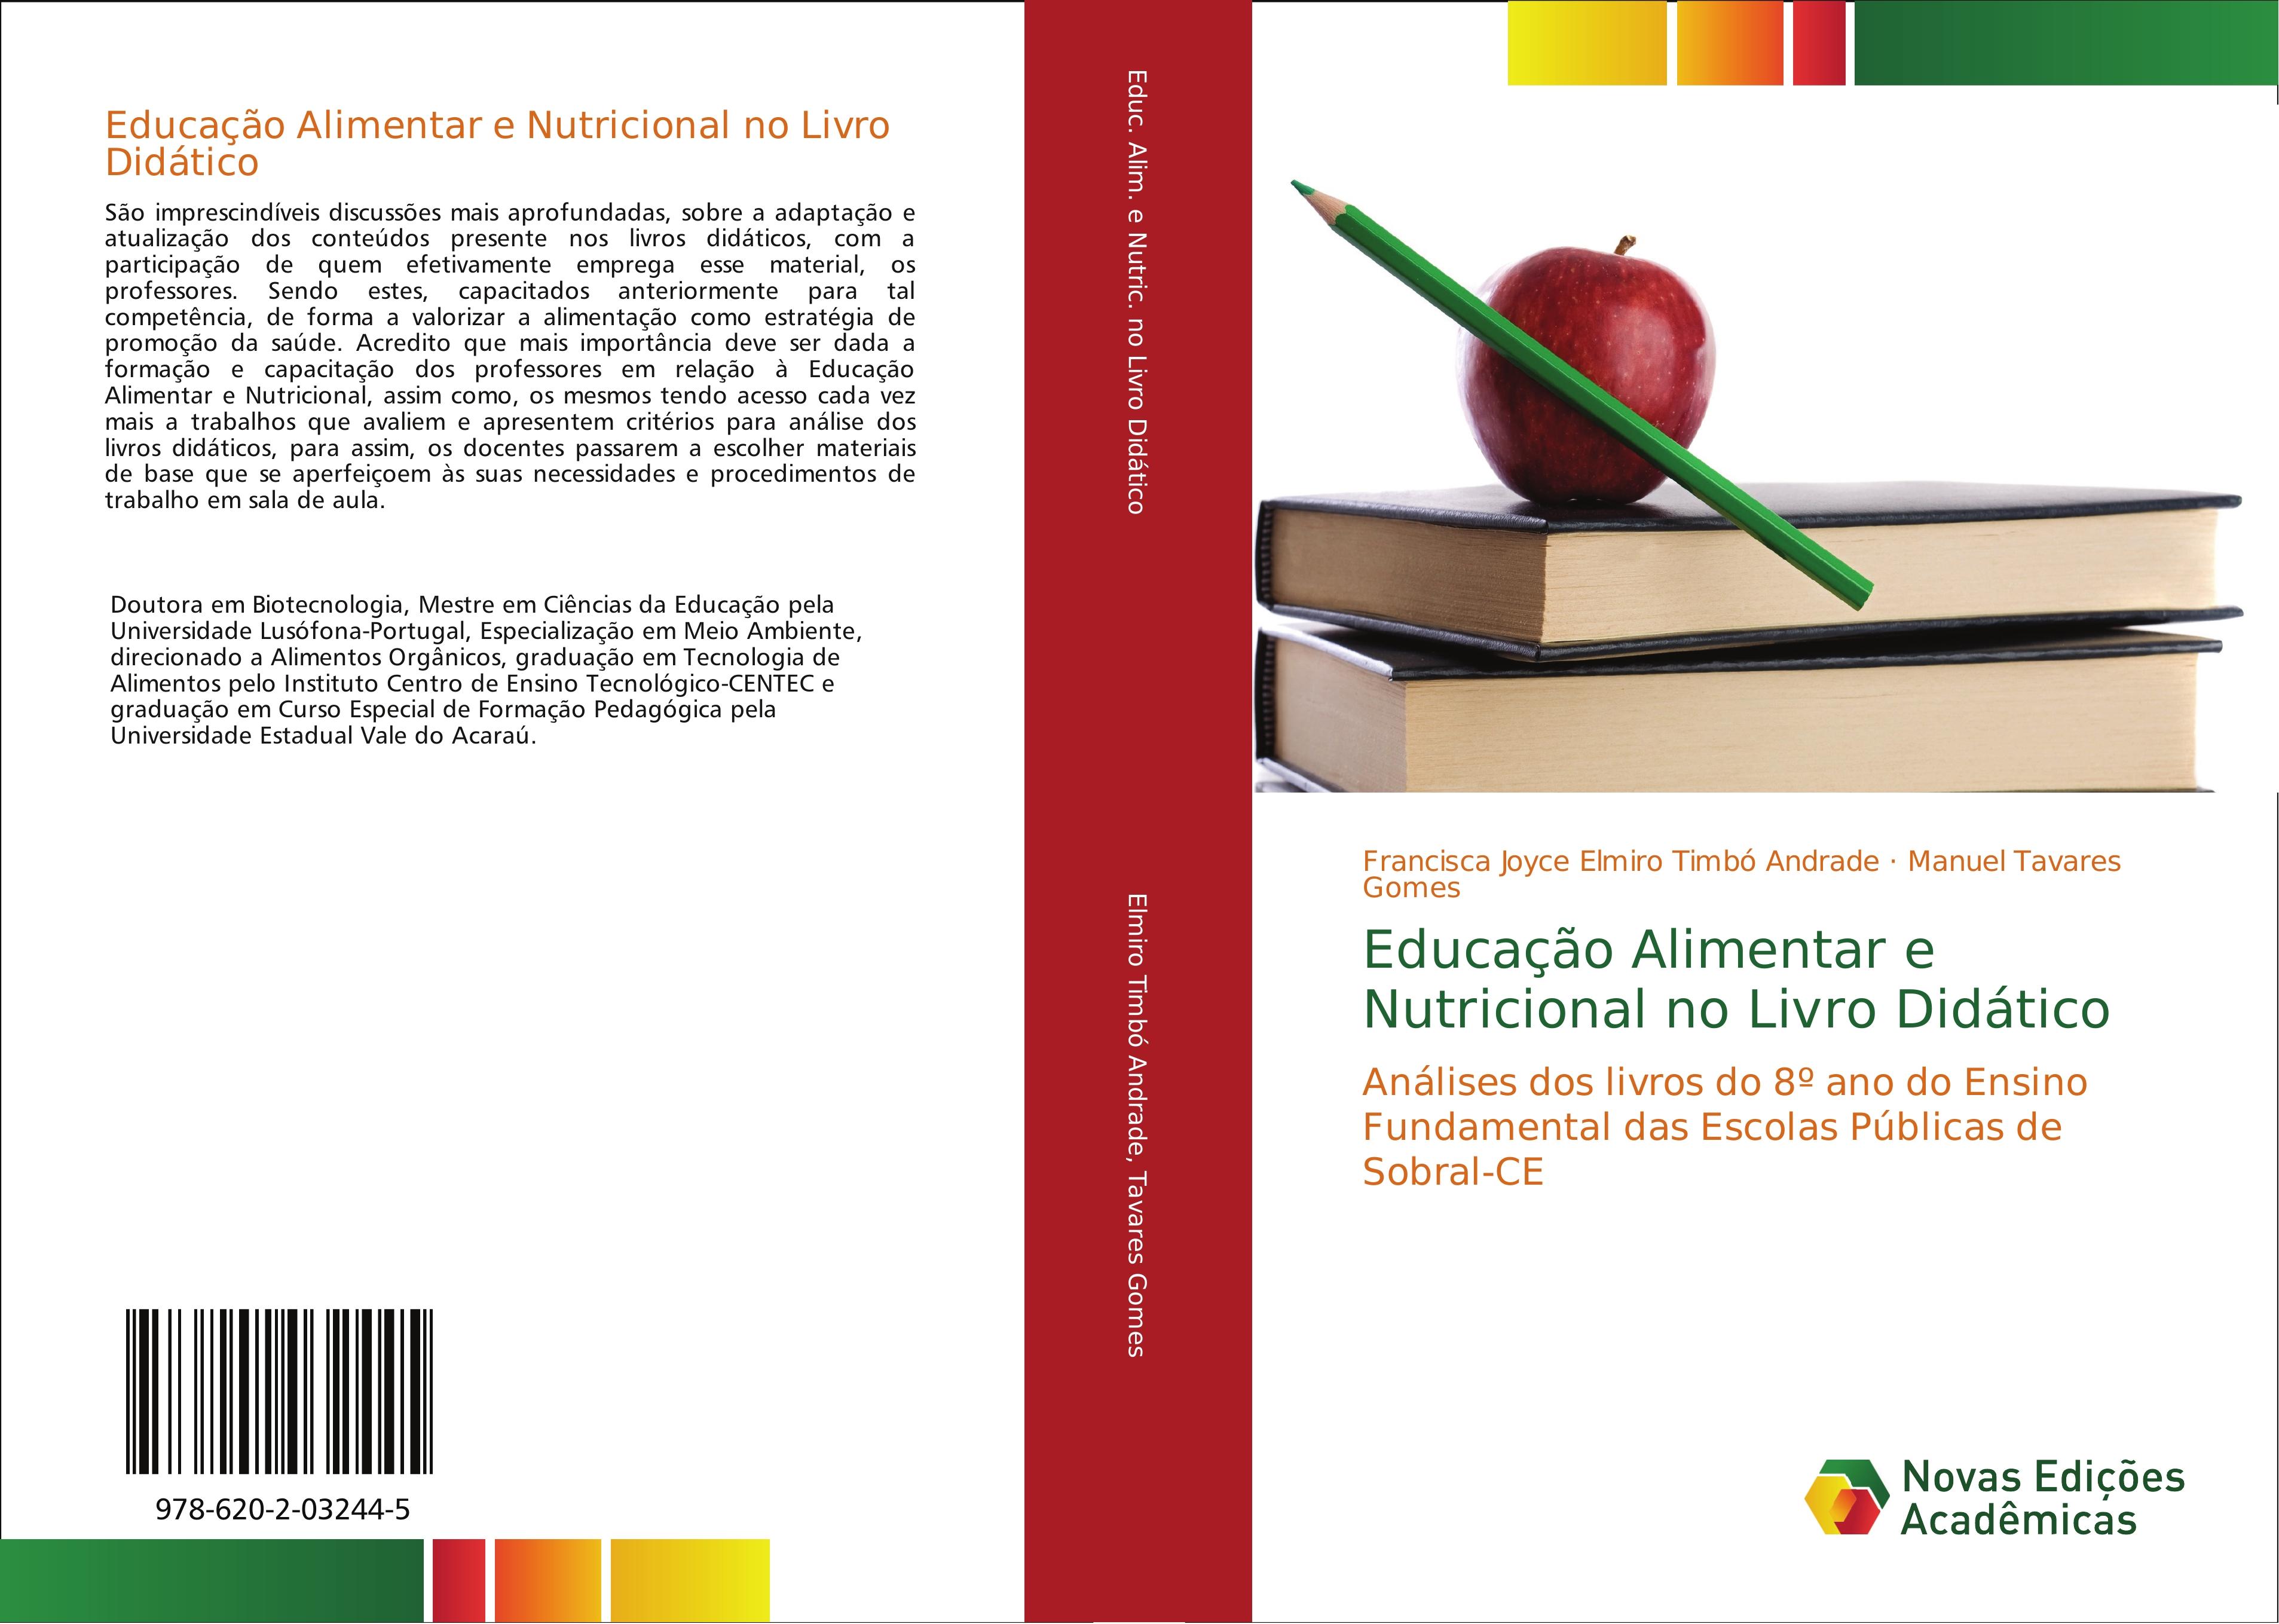 Educação Alimentar e Nutricional no Livro Didático - Francisca Joyce Elmiro Timbó Andrade Manuel Tavares Gomes